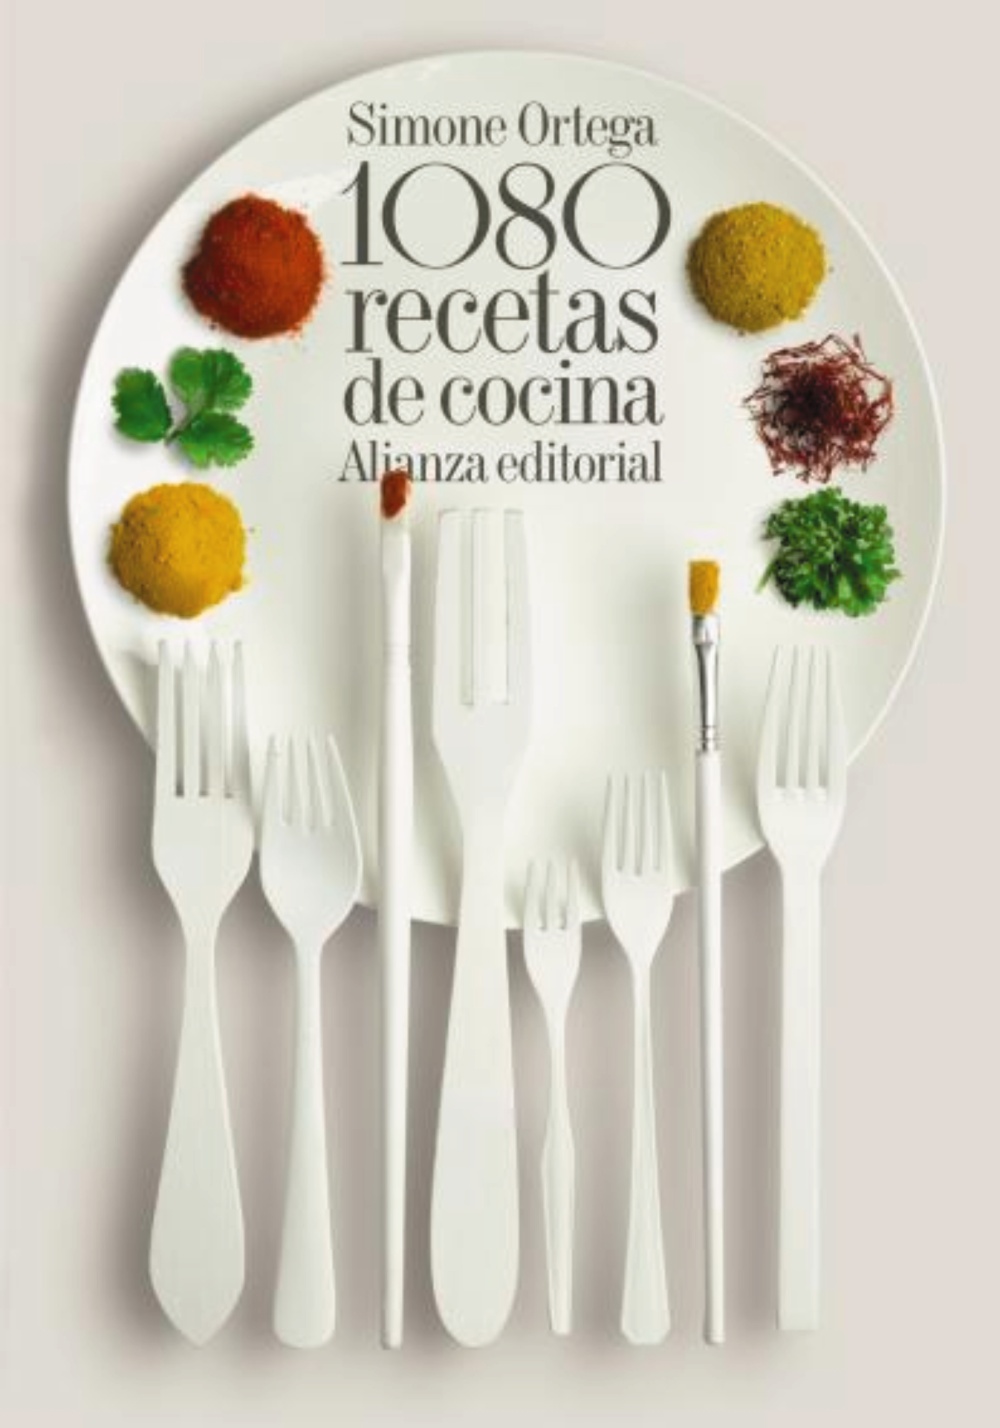 1080 recetas de cocina - Simone  Ortega 